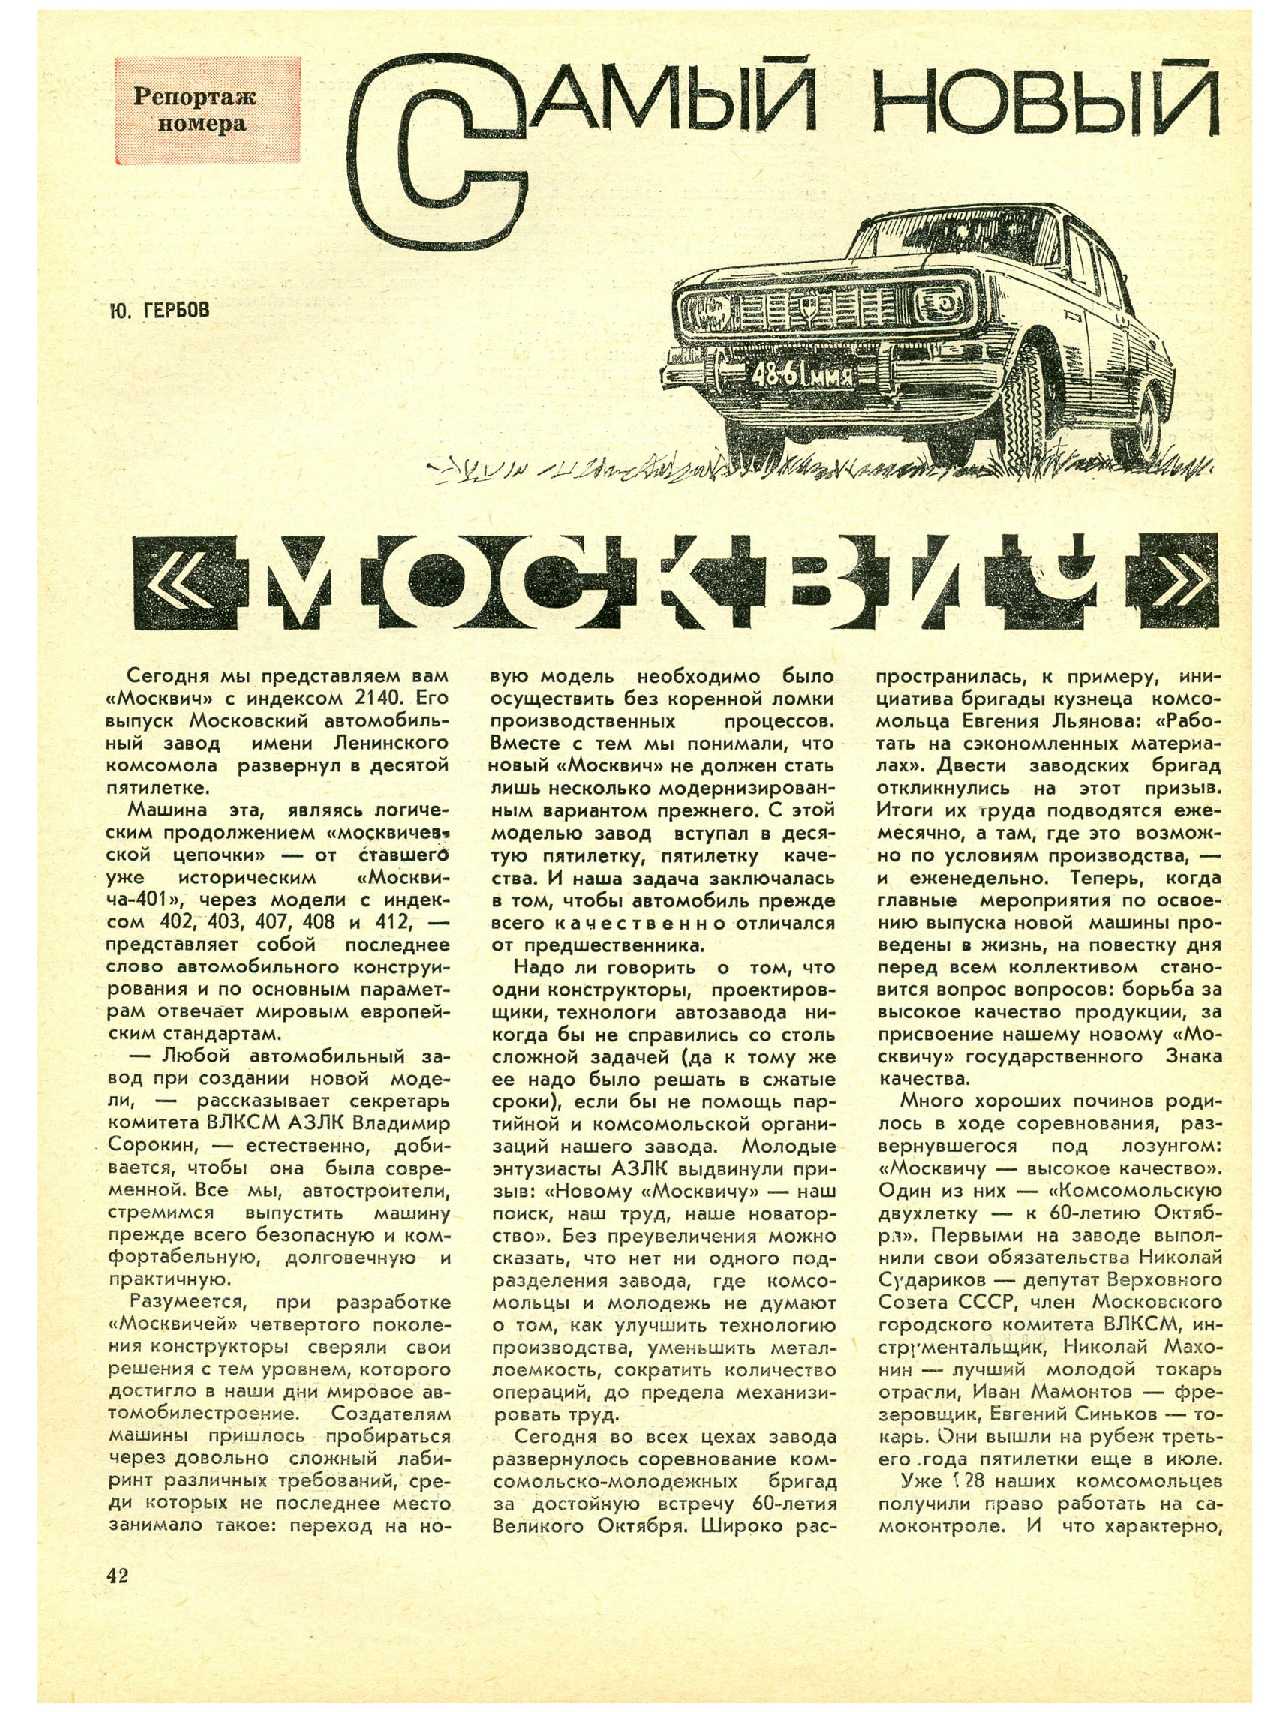 МК 11, 1977, 42 c.